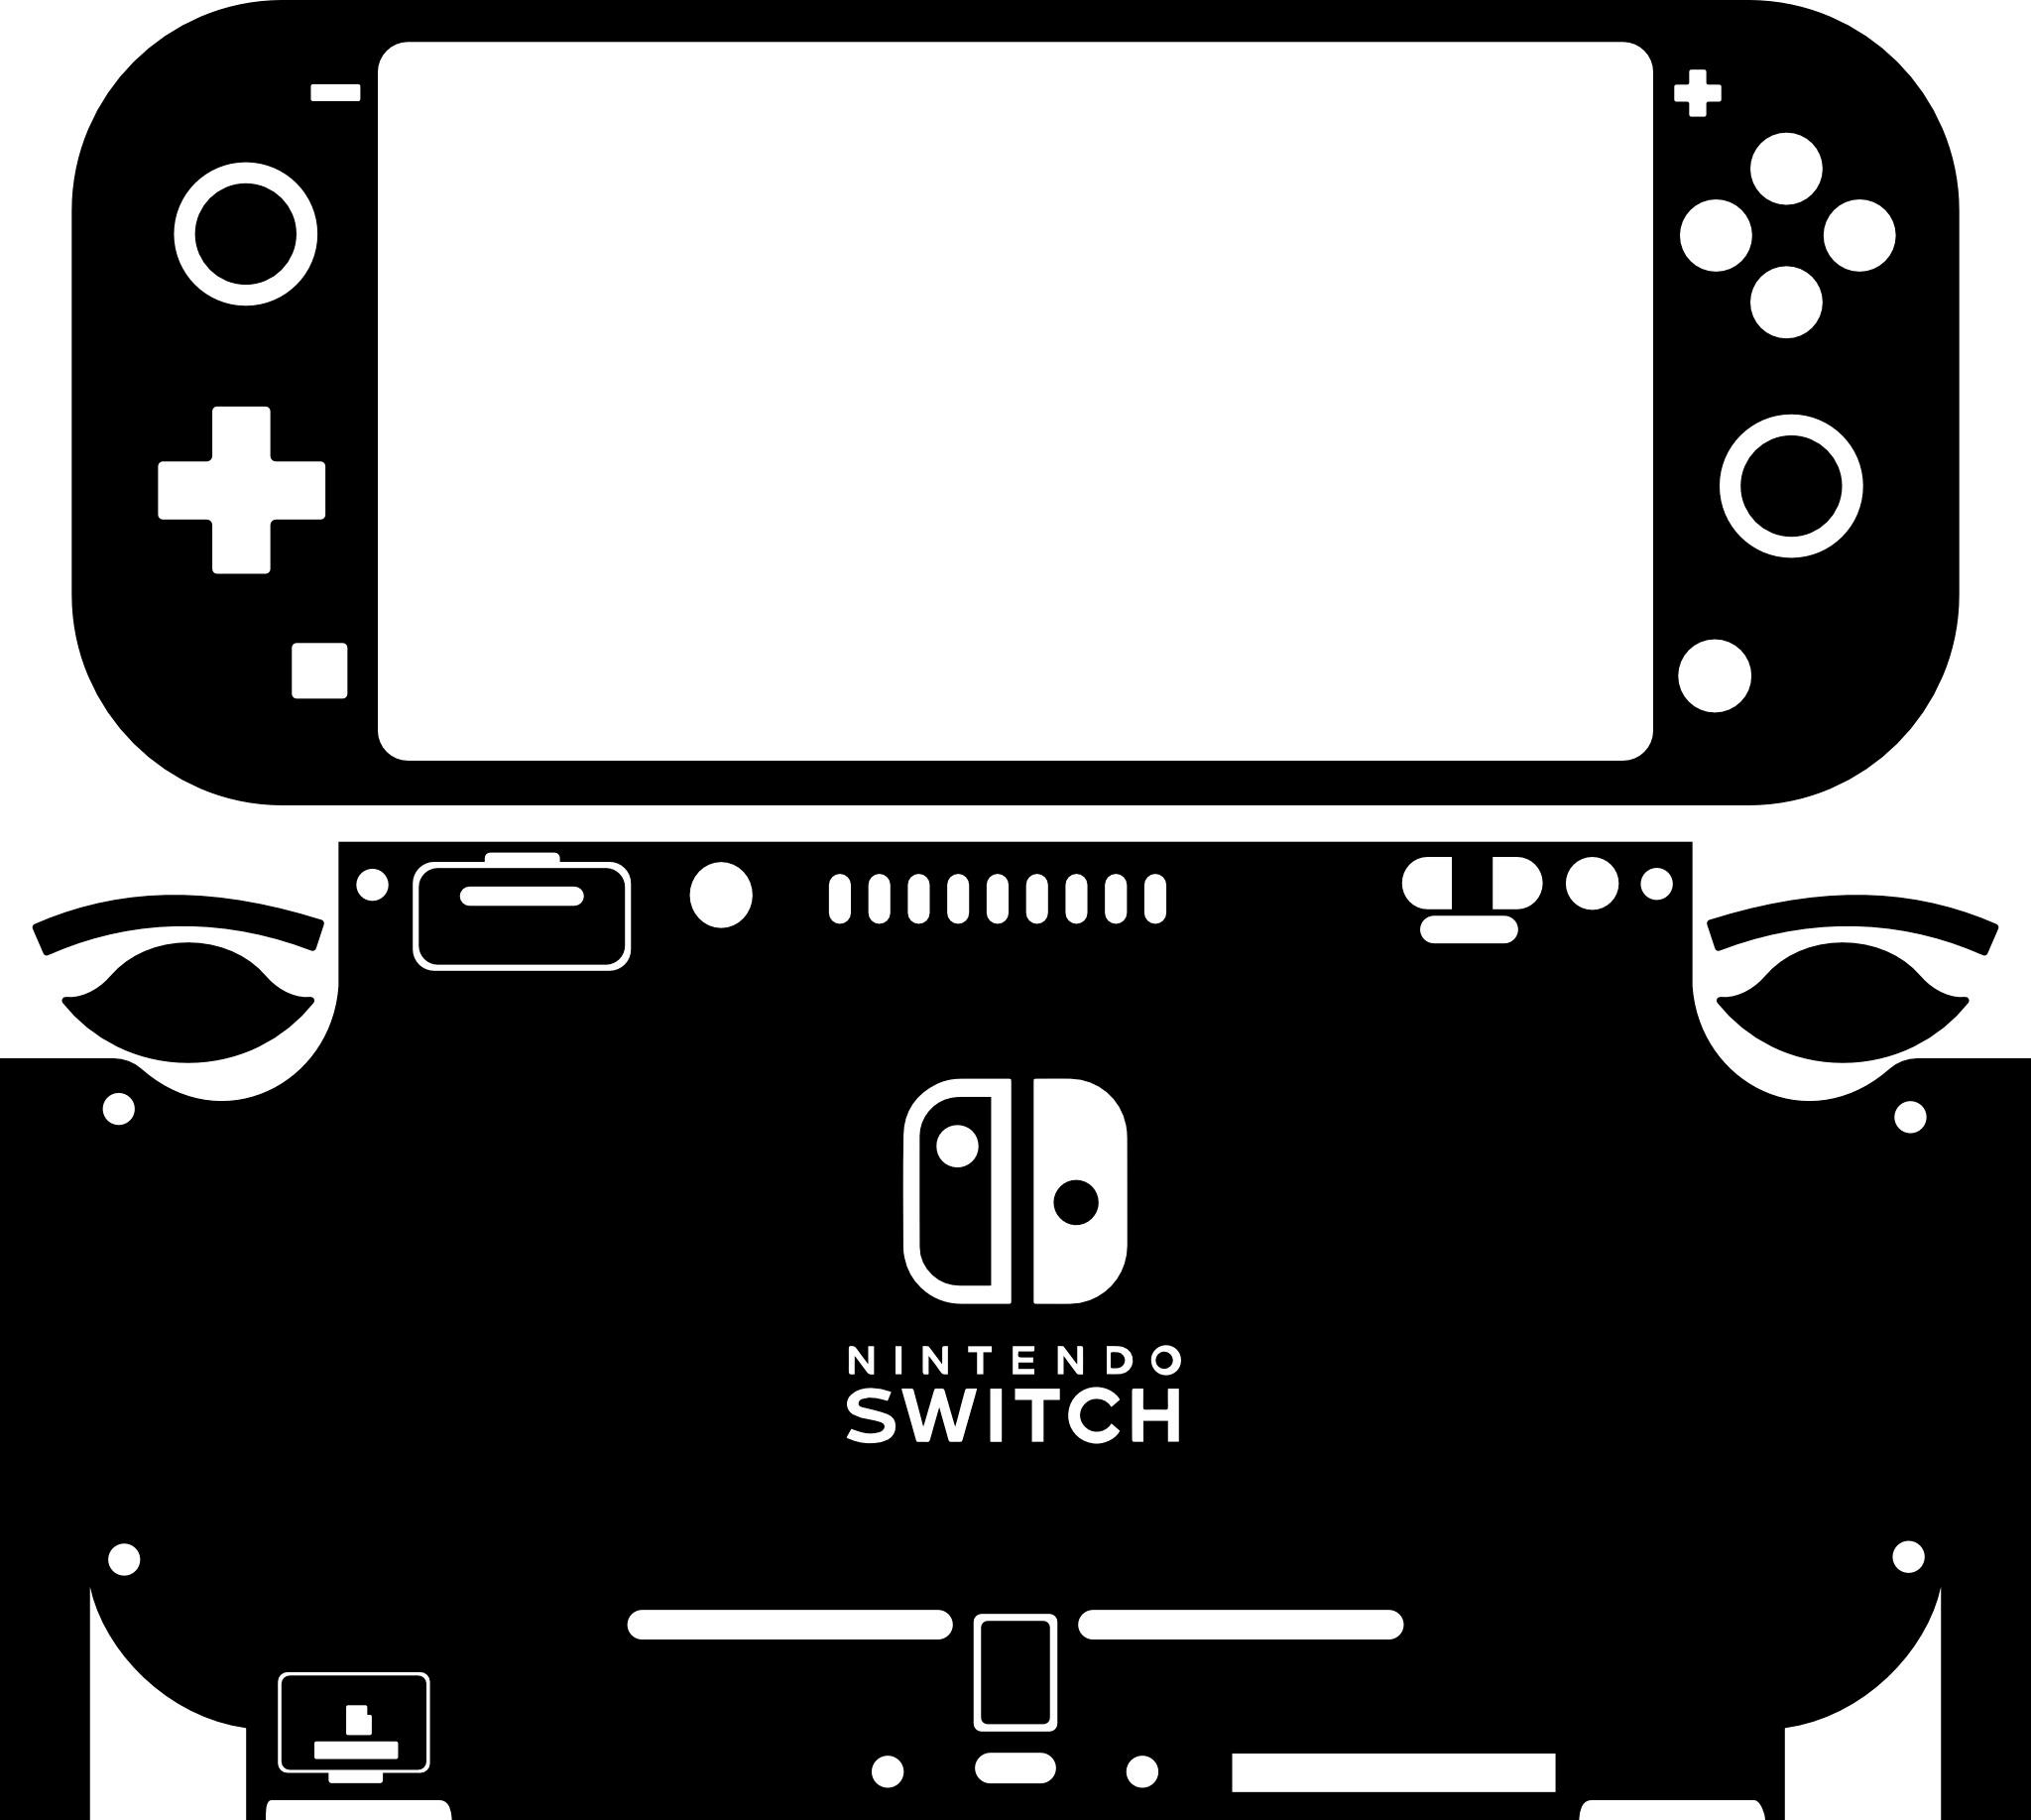 Skin decal dán Nintendo Switch Lite mẫu vân marble water colorful (dễ dán, đã cắt sẵn)